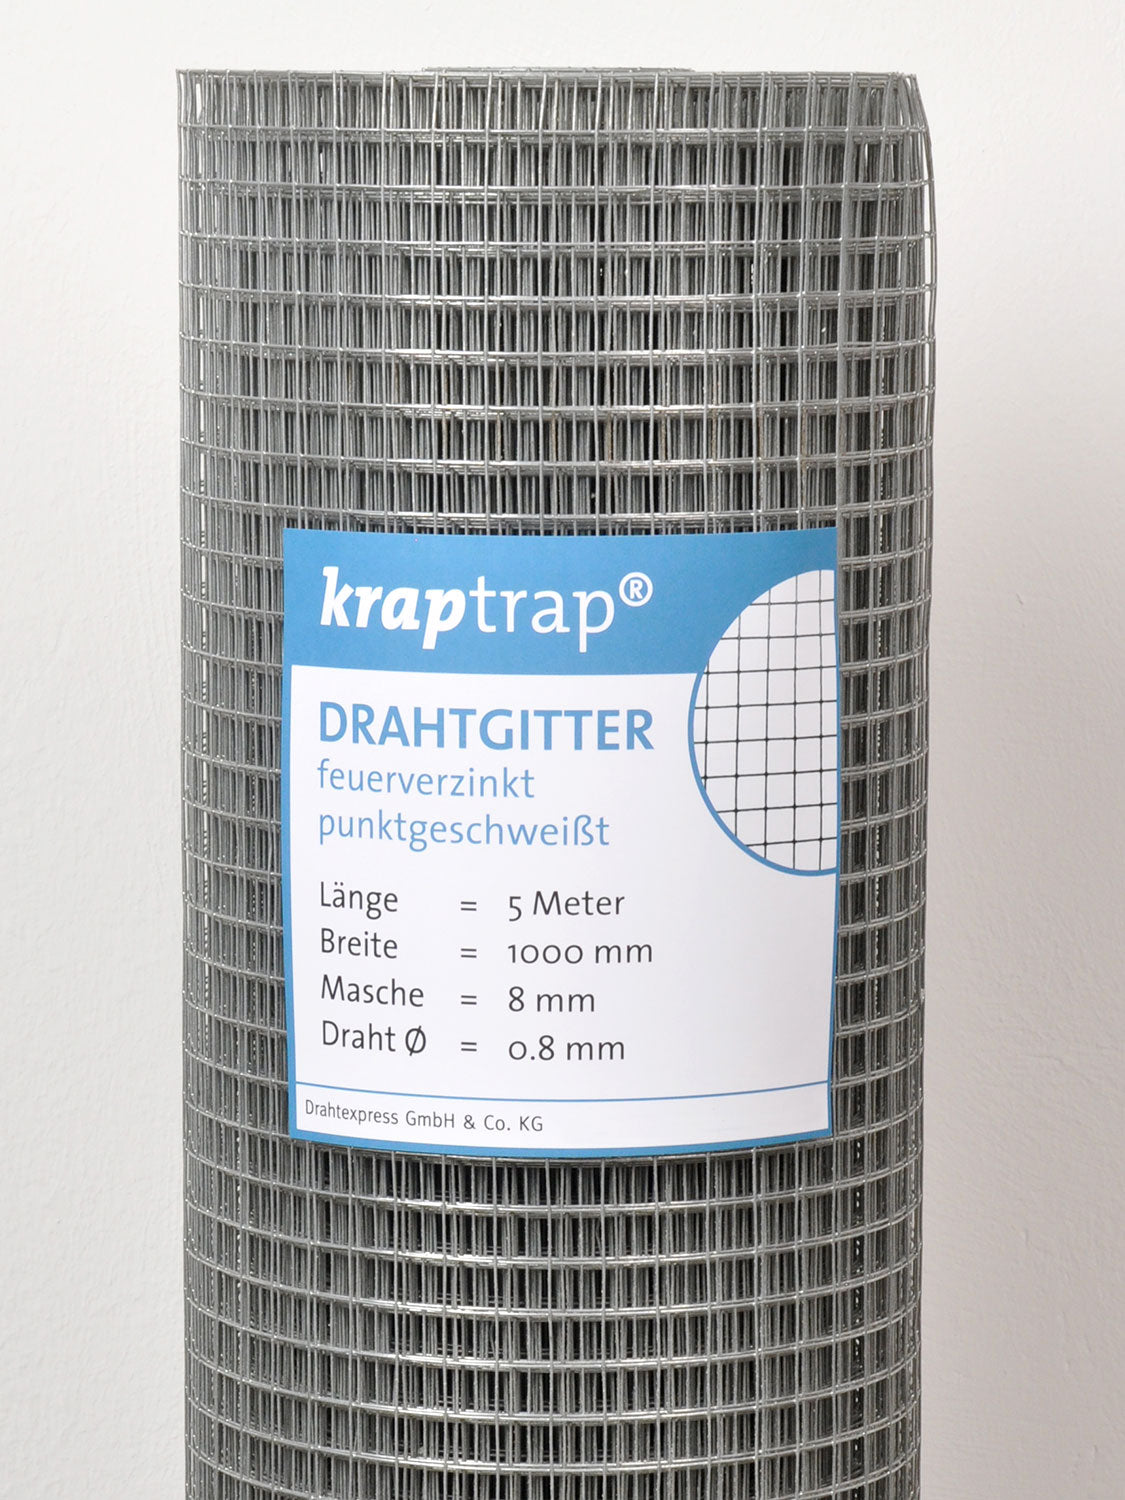 Kraptrap® Volierendraht Drahtgitter 8 mm Masche, 100 cm breit, 0,8mm Drahtstärke